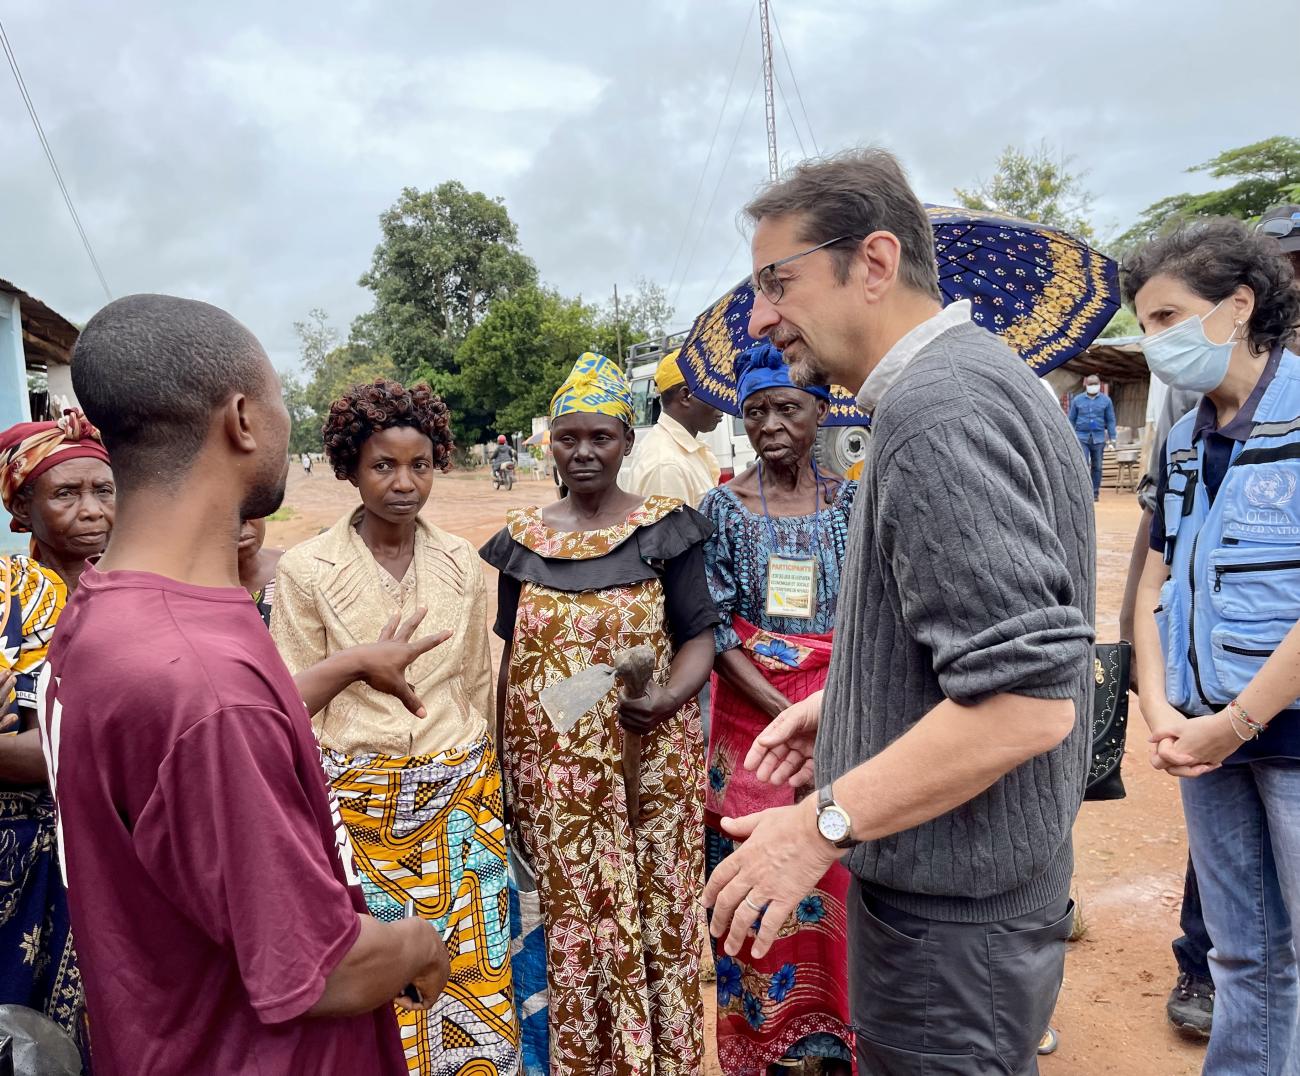 يلتقي المنسق المقيم ومنسق الشؤون الإنسانية في جمهورية الكونغو الديمقراطية برونو ليماركيز عددًا من سكان موقع للنازحين داخليًا في تنجانيقا، جنوب شرق جمهورية الكونغو الديمقراطية.